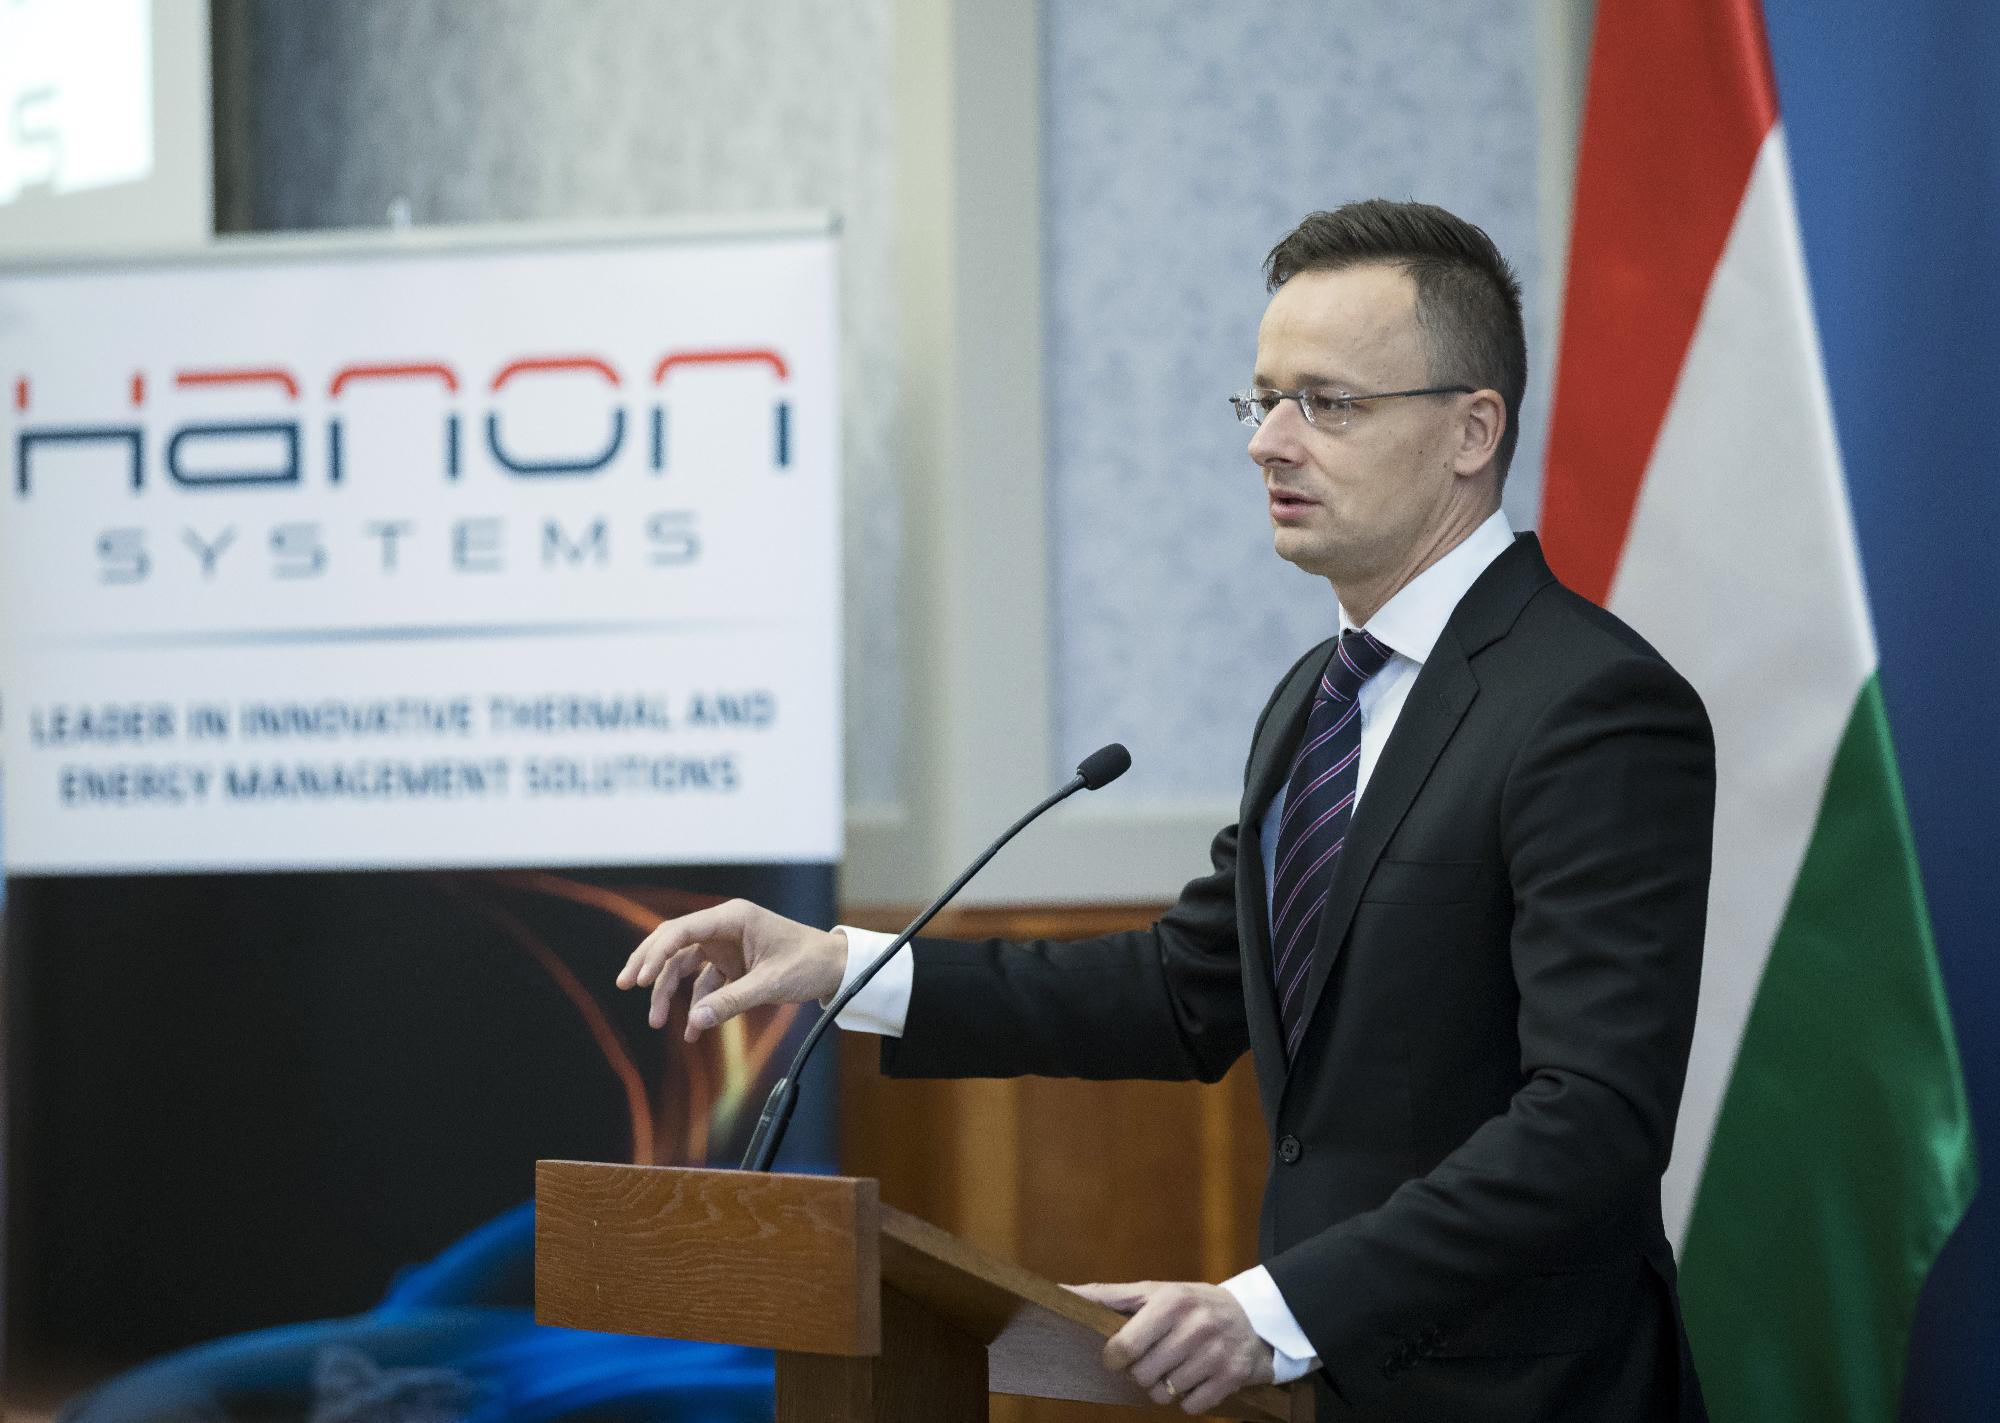 A Hanon jelenléte egyidős a magyar demokráciával